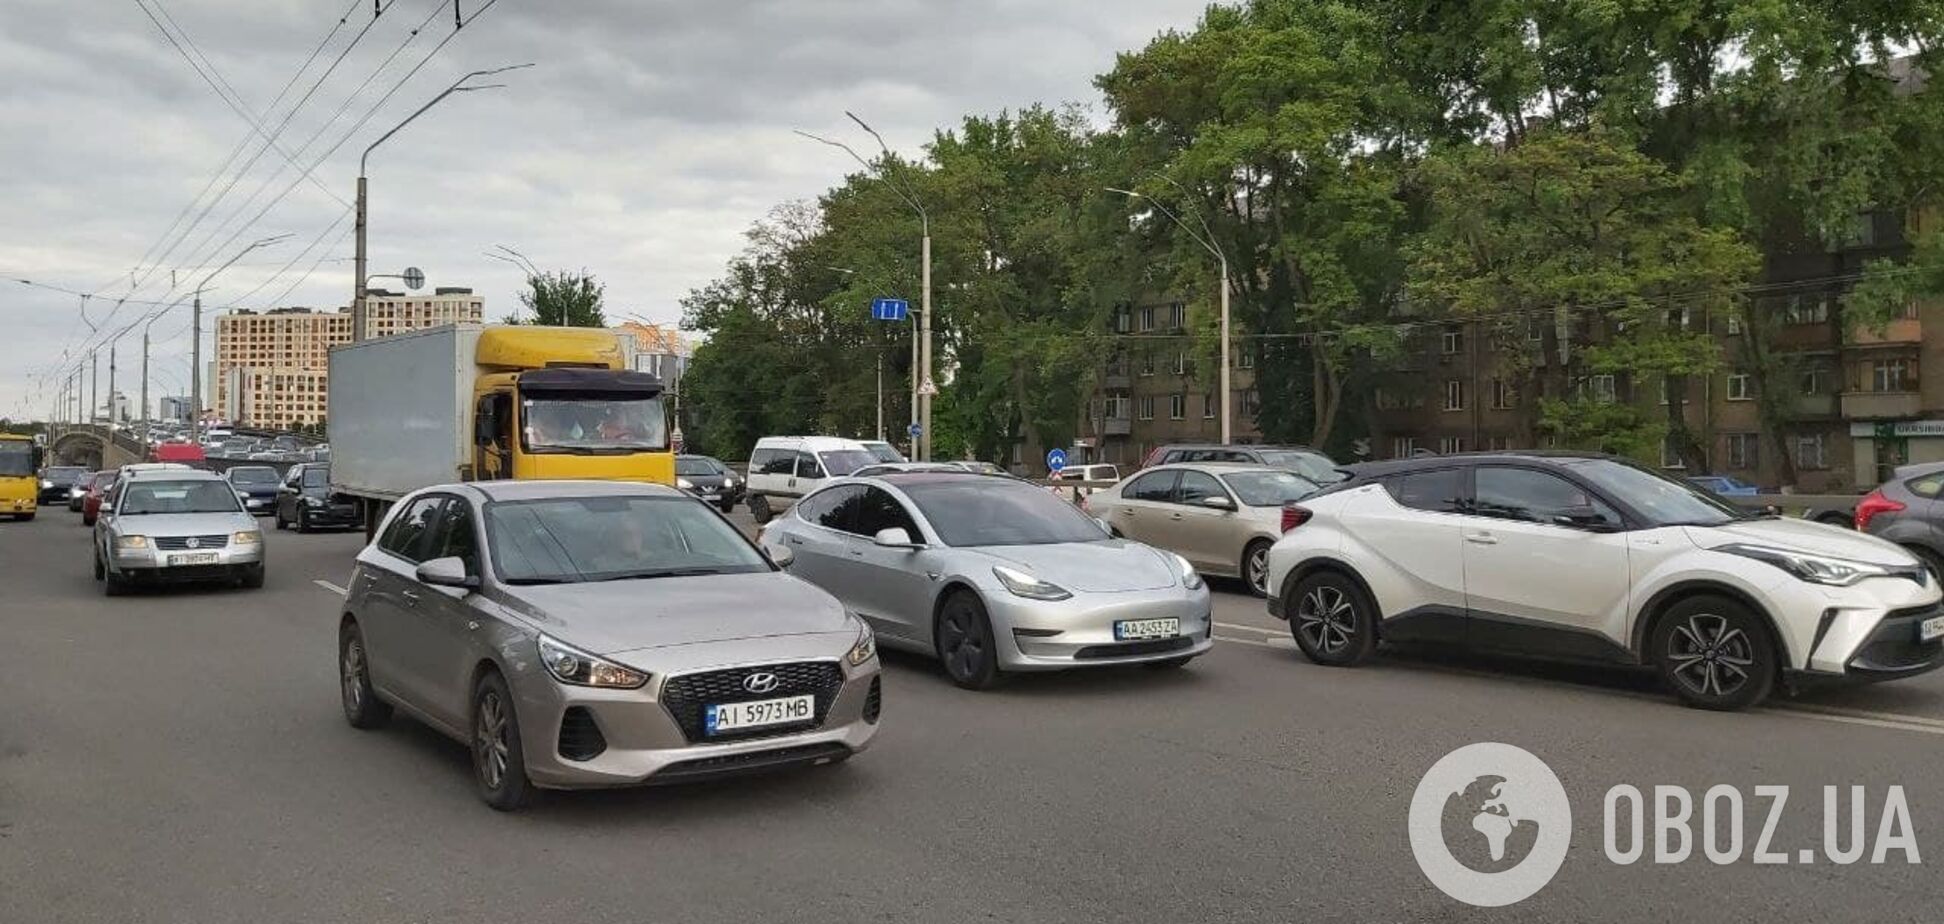 В Киеве из-за ДТП образовались многочисленные пробки